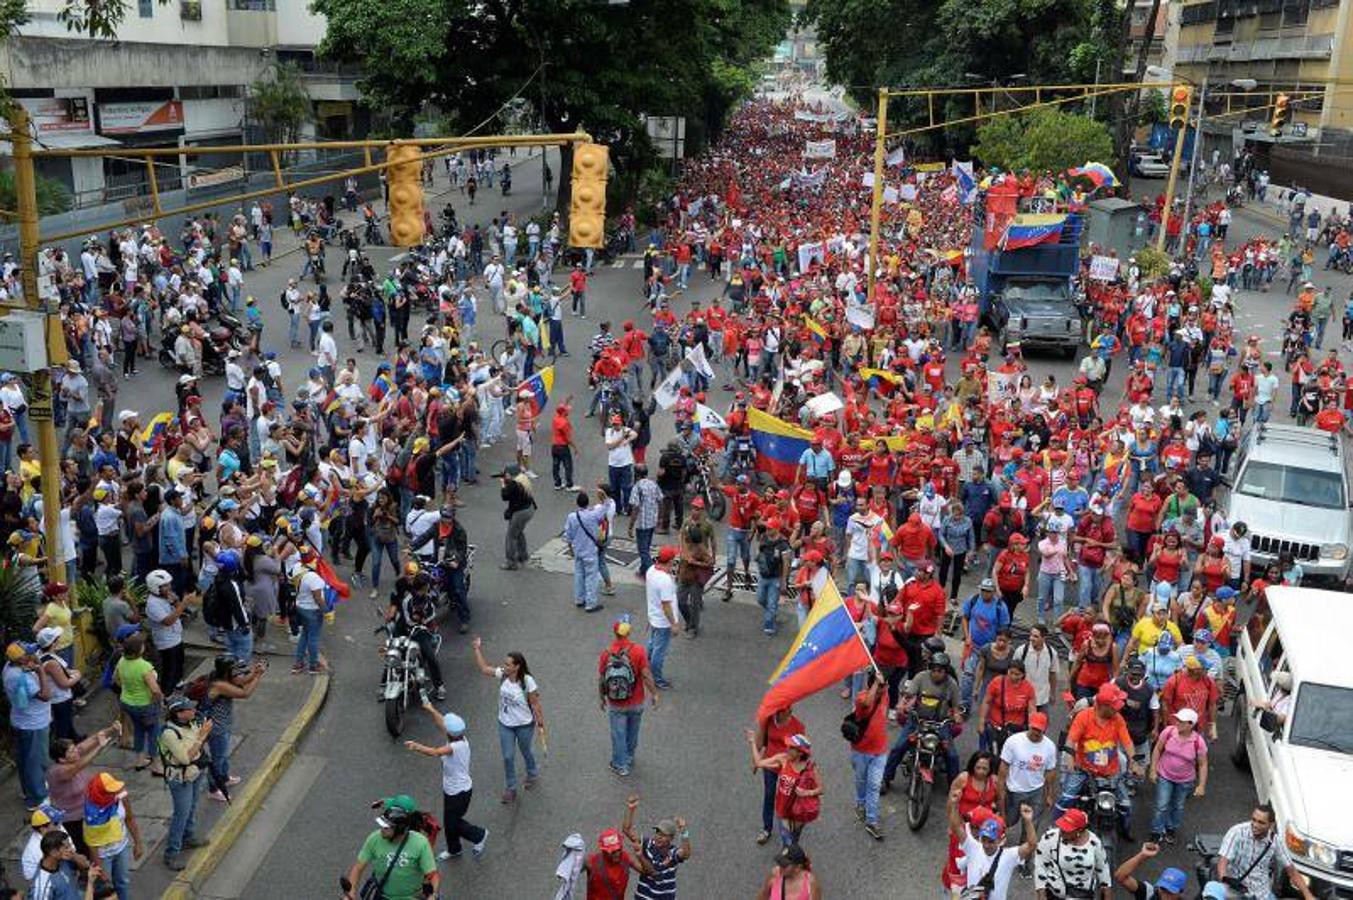 Los manifestantes en apoyo del gobierno del presidente Nicolas Maduro (C en rojo) marchan hacia el centro de Caracas mientras los manifestantes anti gubernamentales (en L) les gritan consignas